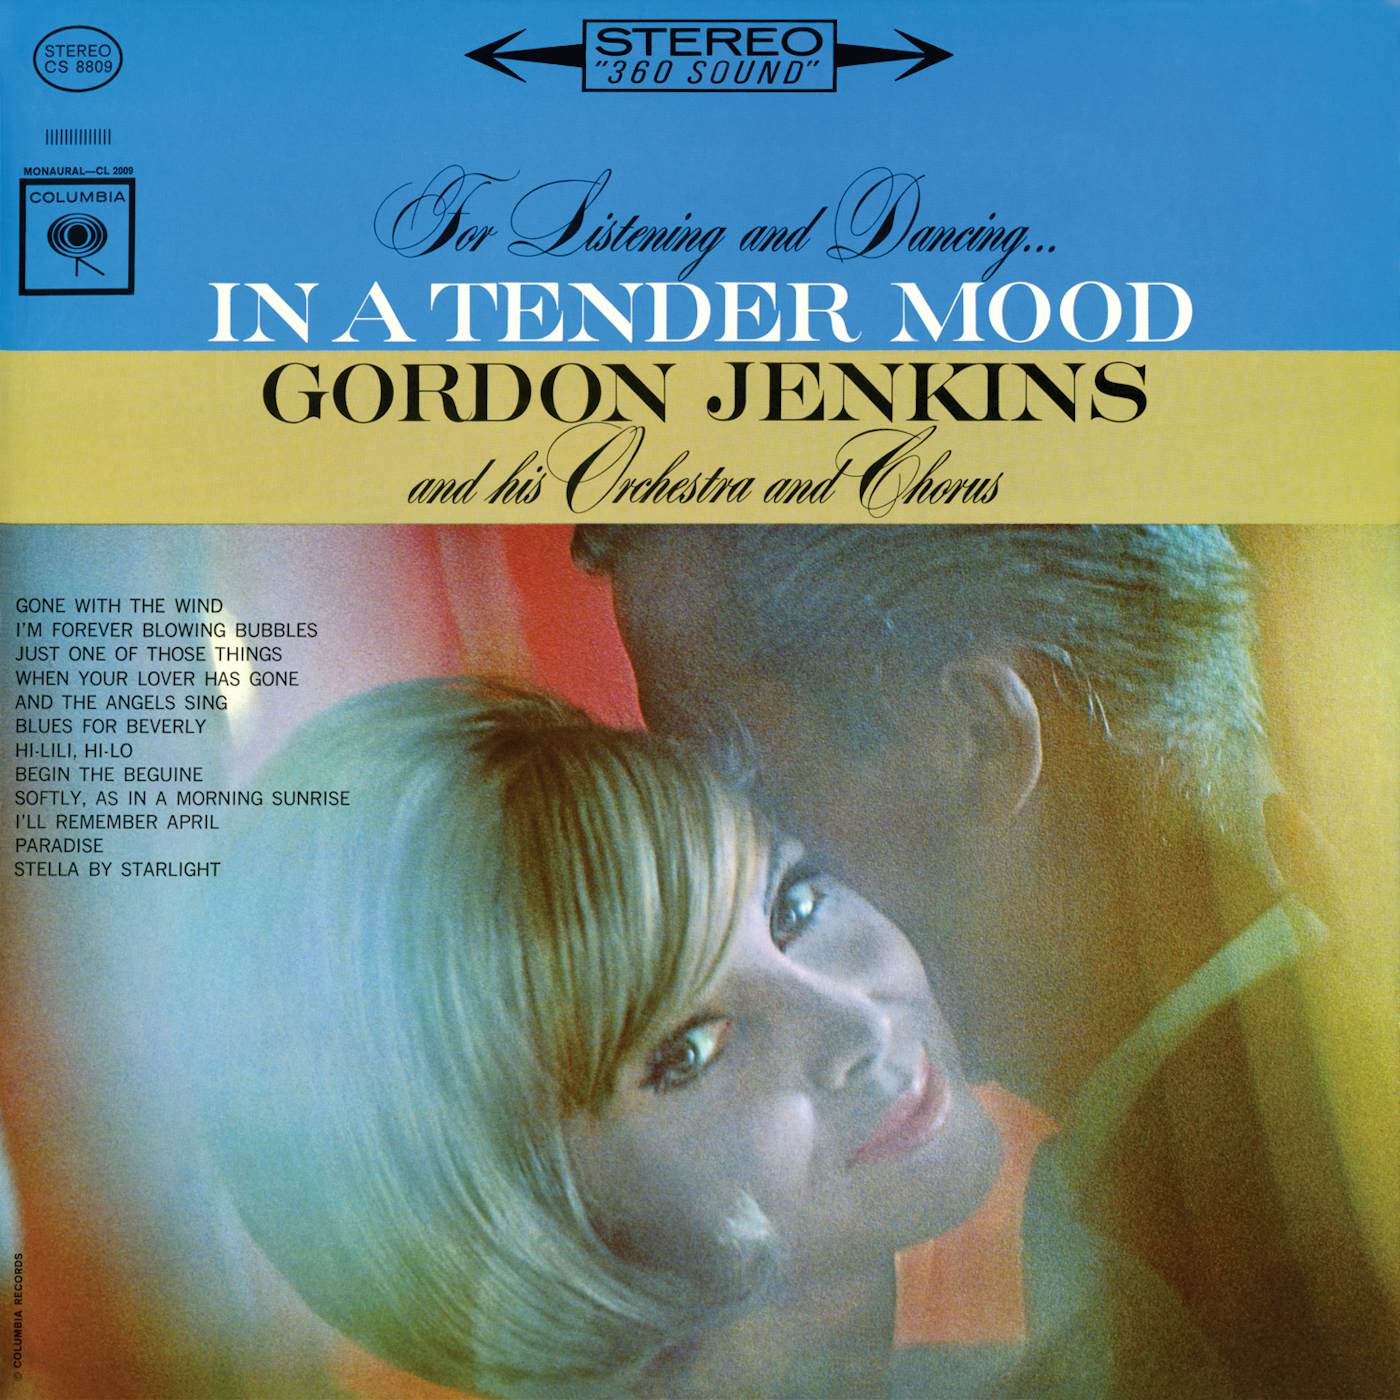 Gordon Jenkins IN A TENDER MOOD CD